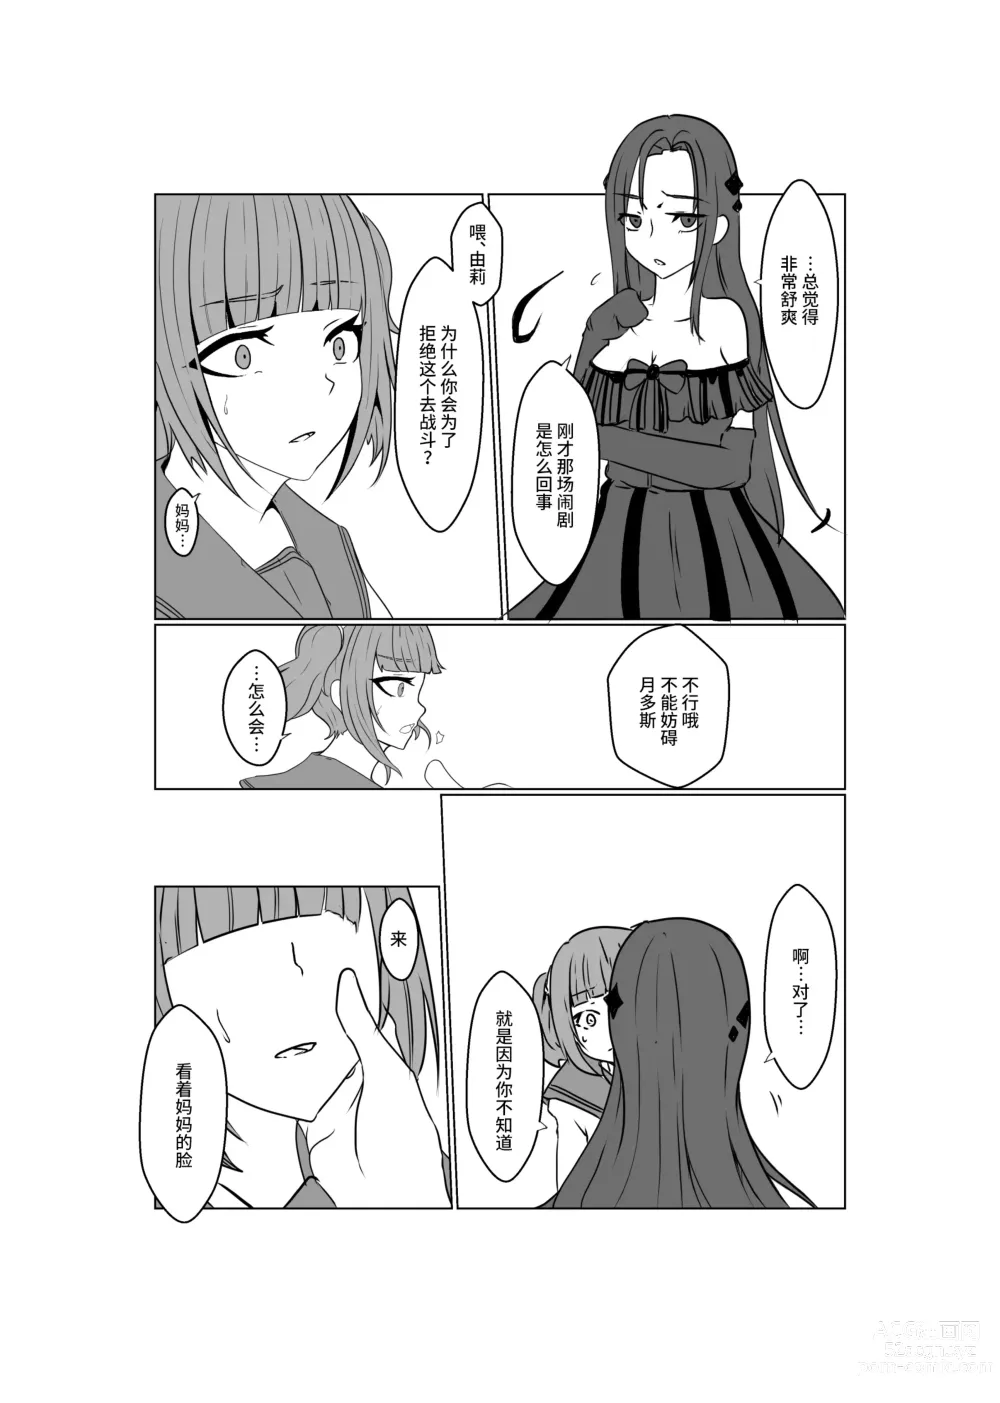 Page 65 of doujinshi Aku no Hana Vol.3 Skeb+α Matome